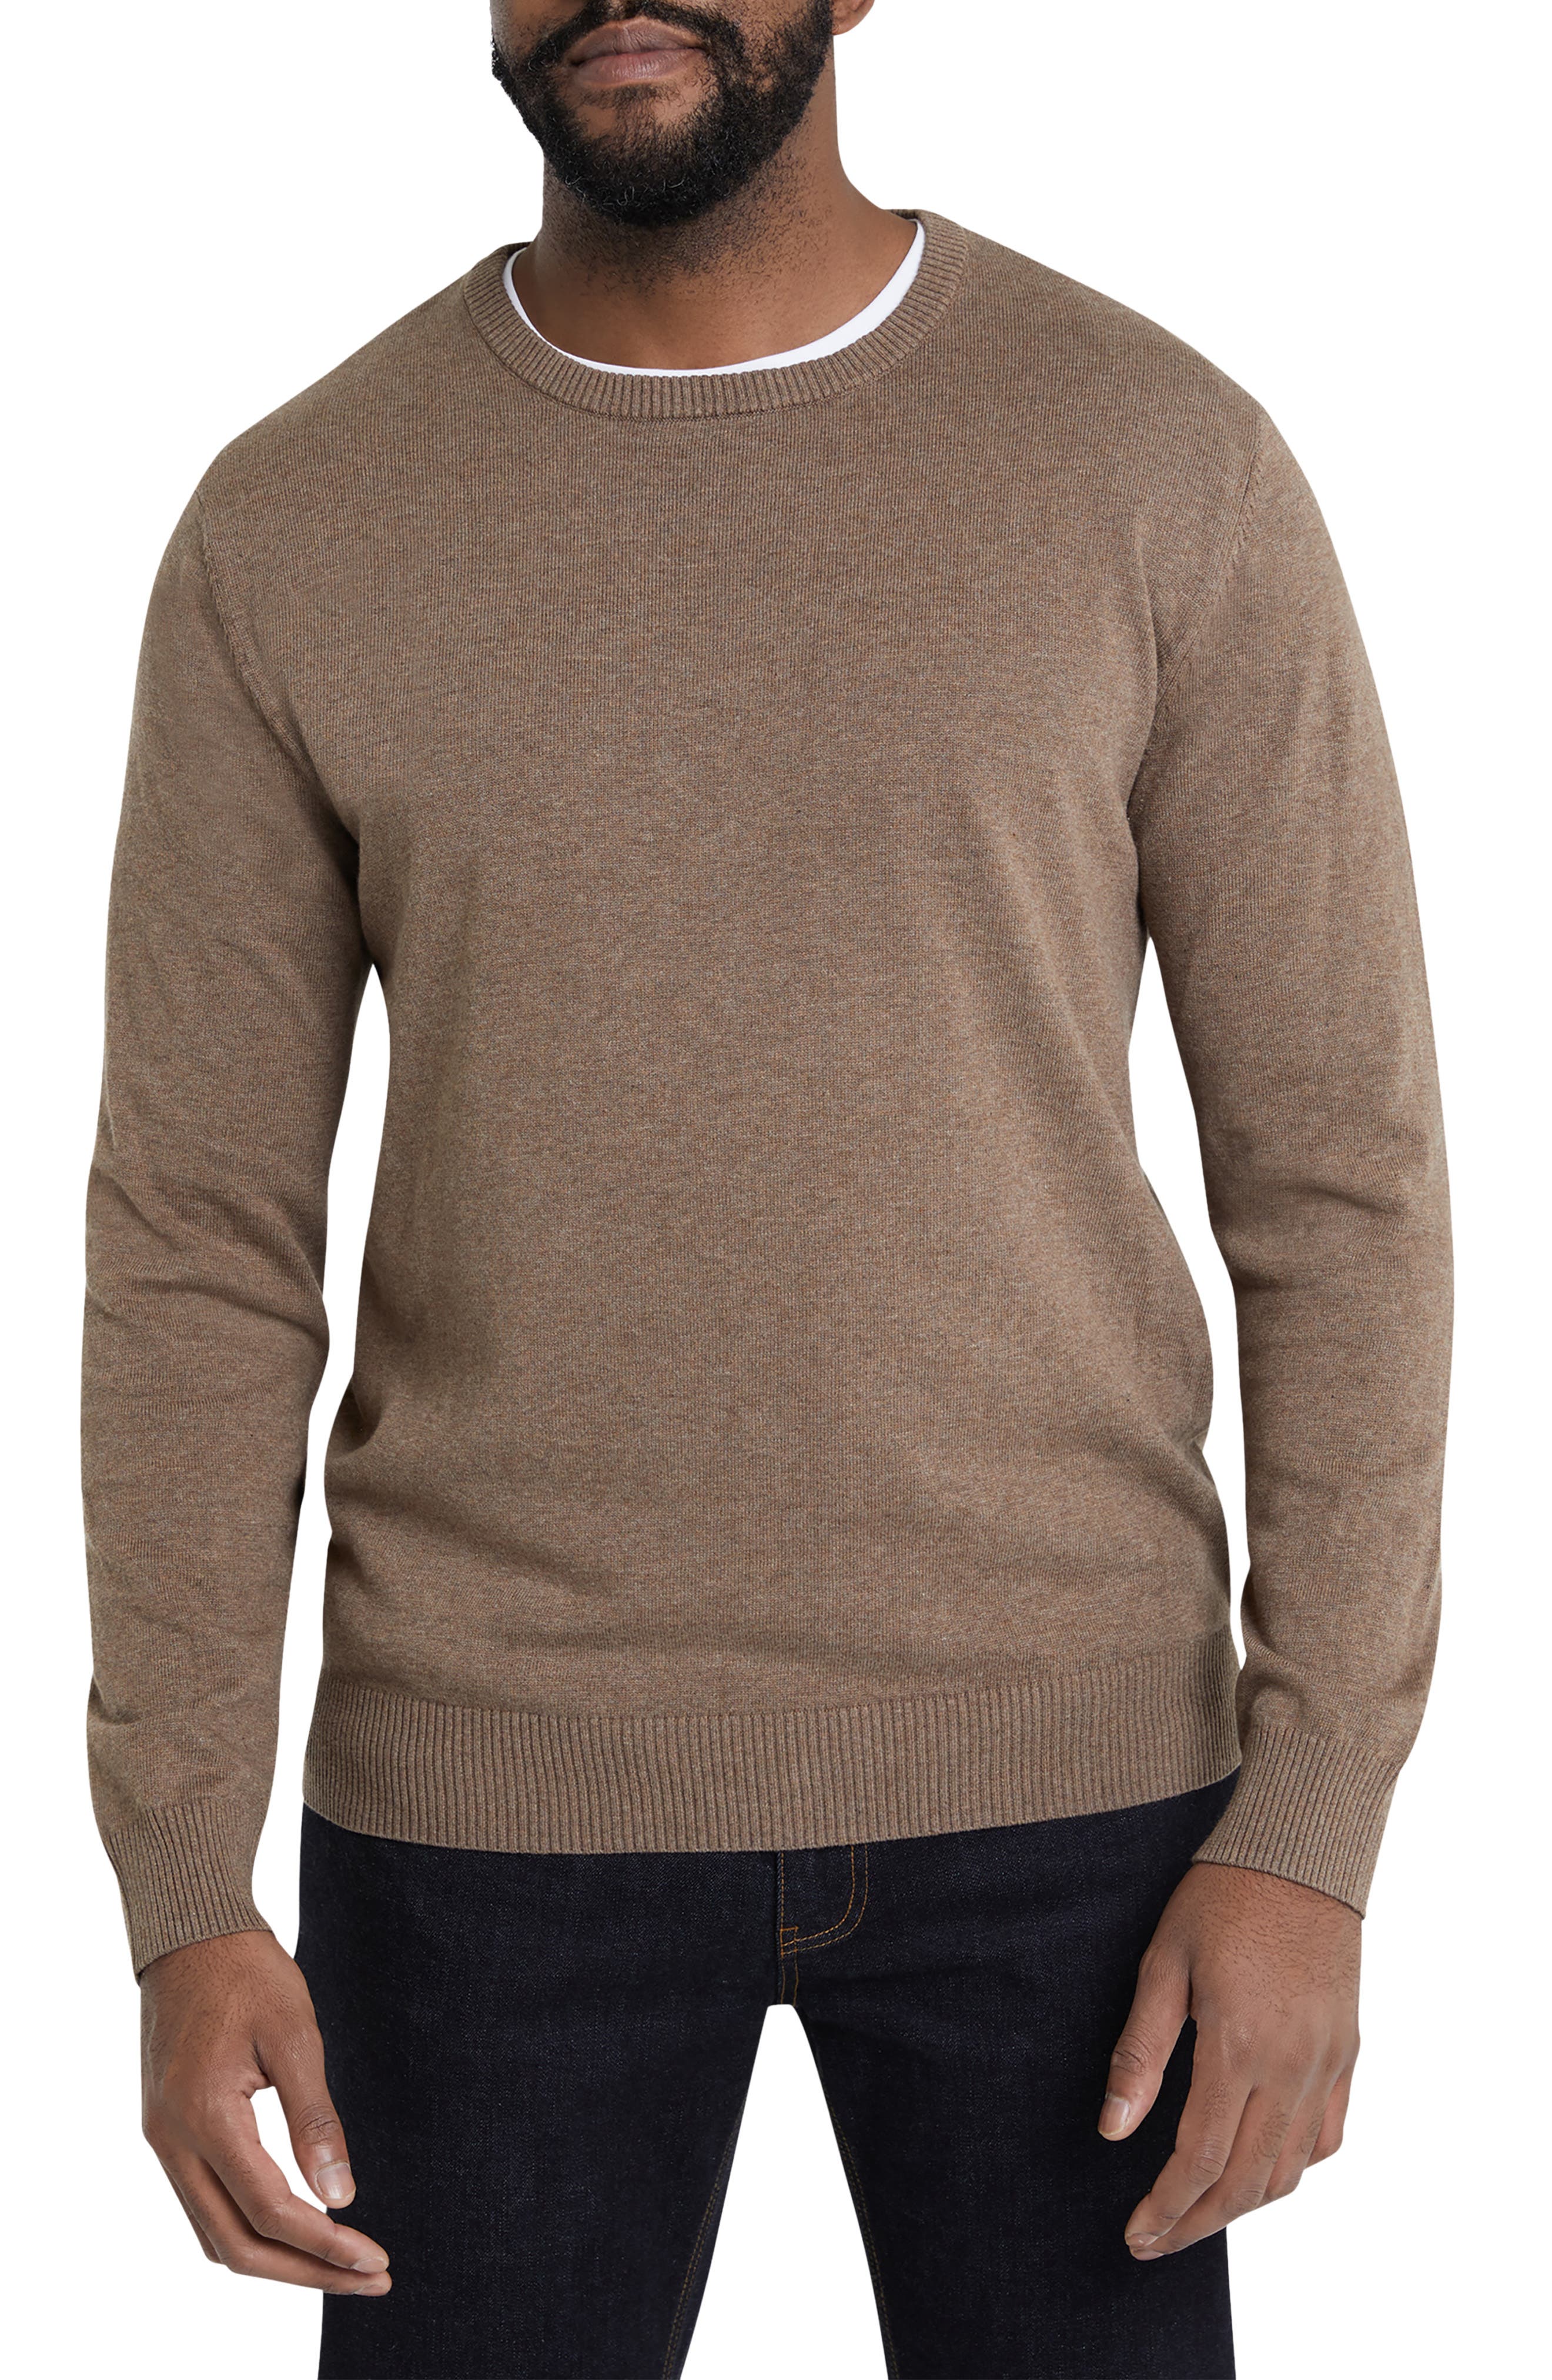 MEN FASHION Jumpers & Sweatshirts Print discount 65% Zara jumper Brown/White M 